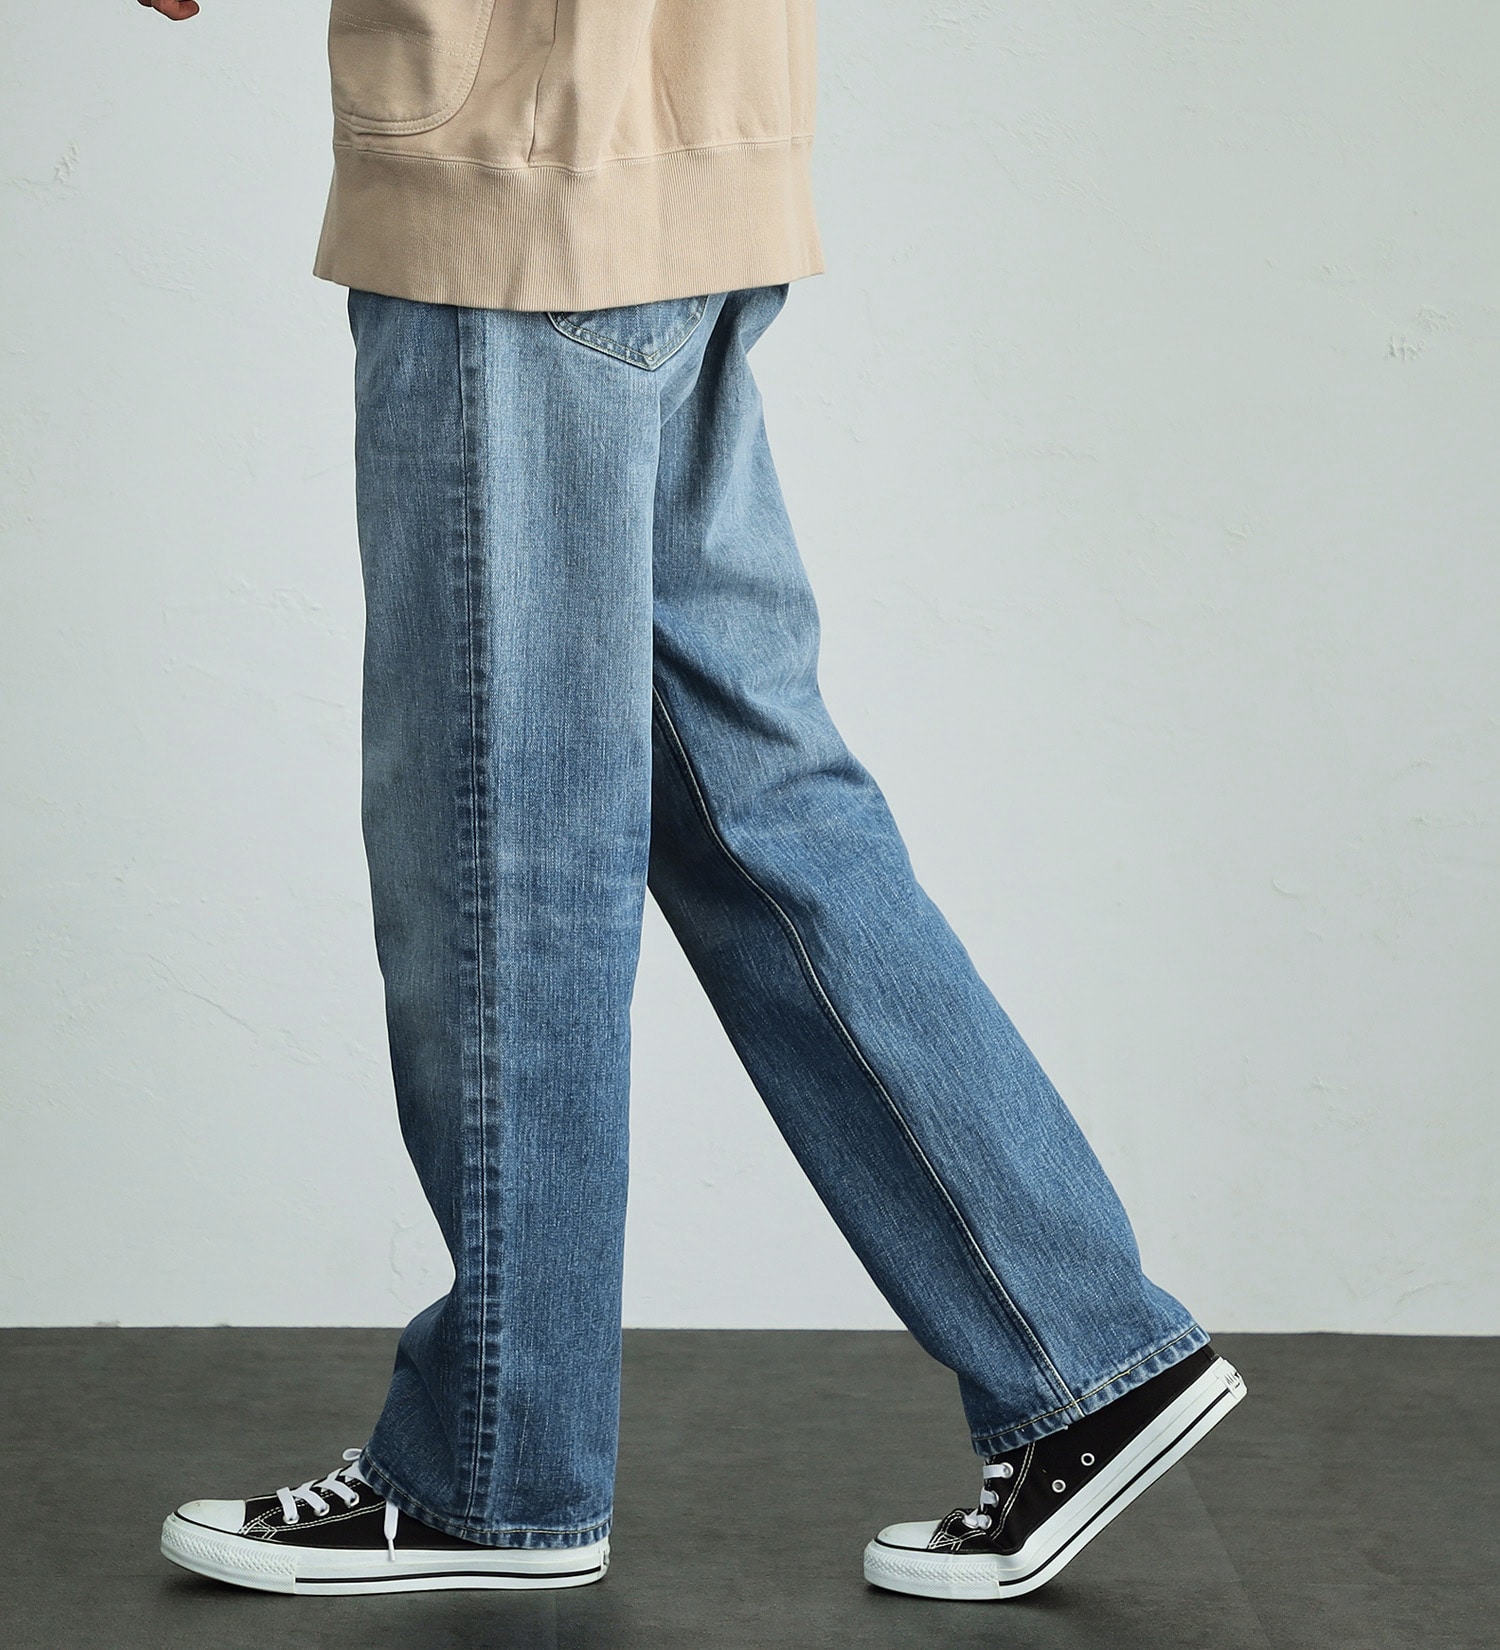 Lee(リー)の【股下長め(83cm)】AMERICAN RIDERS 200 フルカットジーンズ|パンツ/デニムパンツ/メンズ|中色ブルー